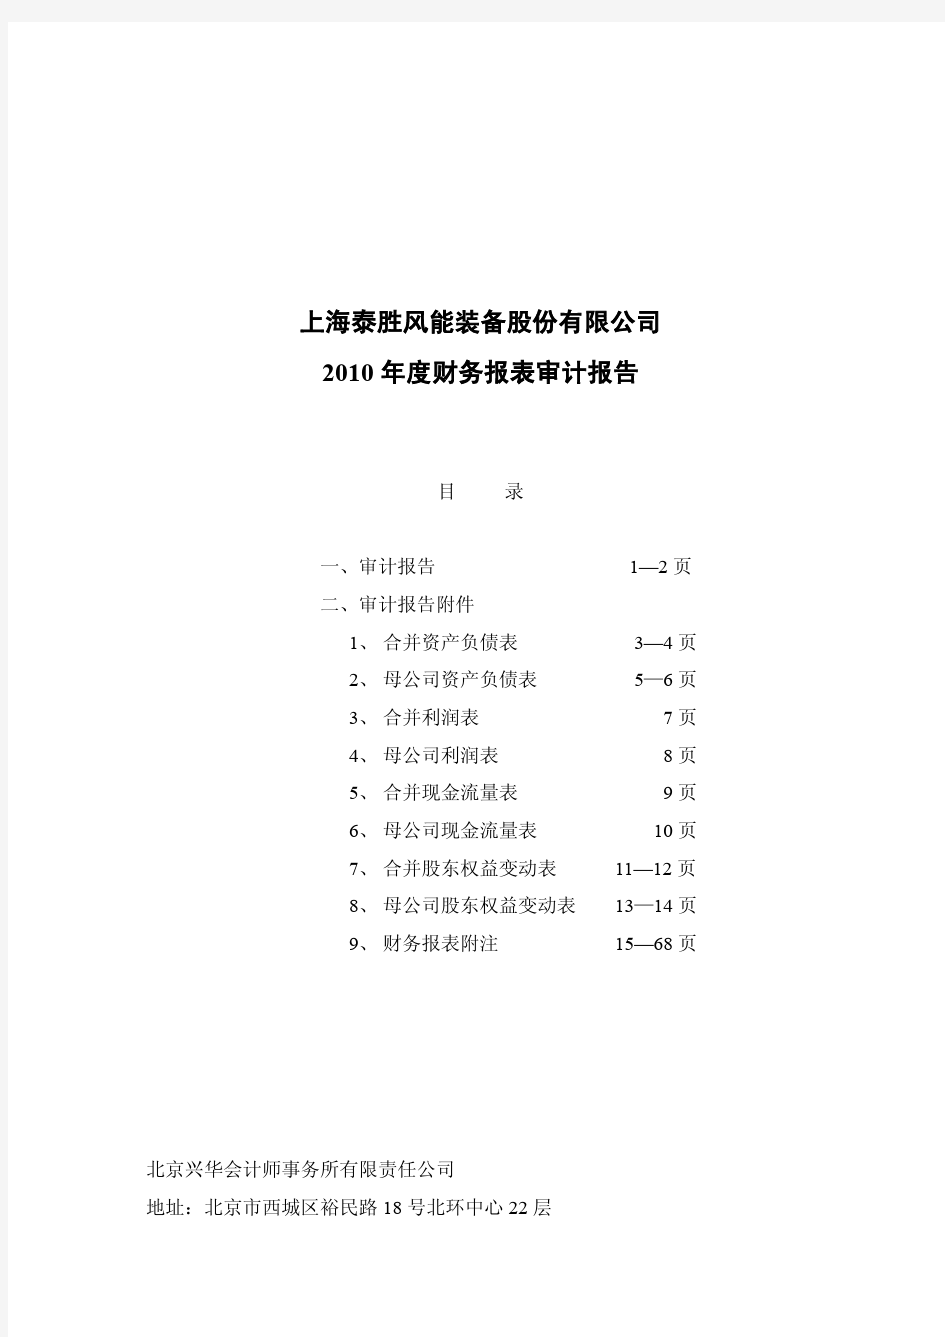 泰胜风能：2010年年度审计报告 2011-02-22